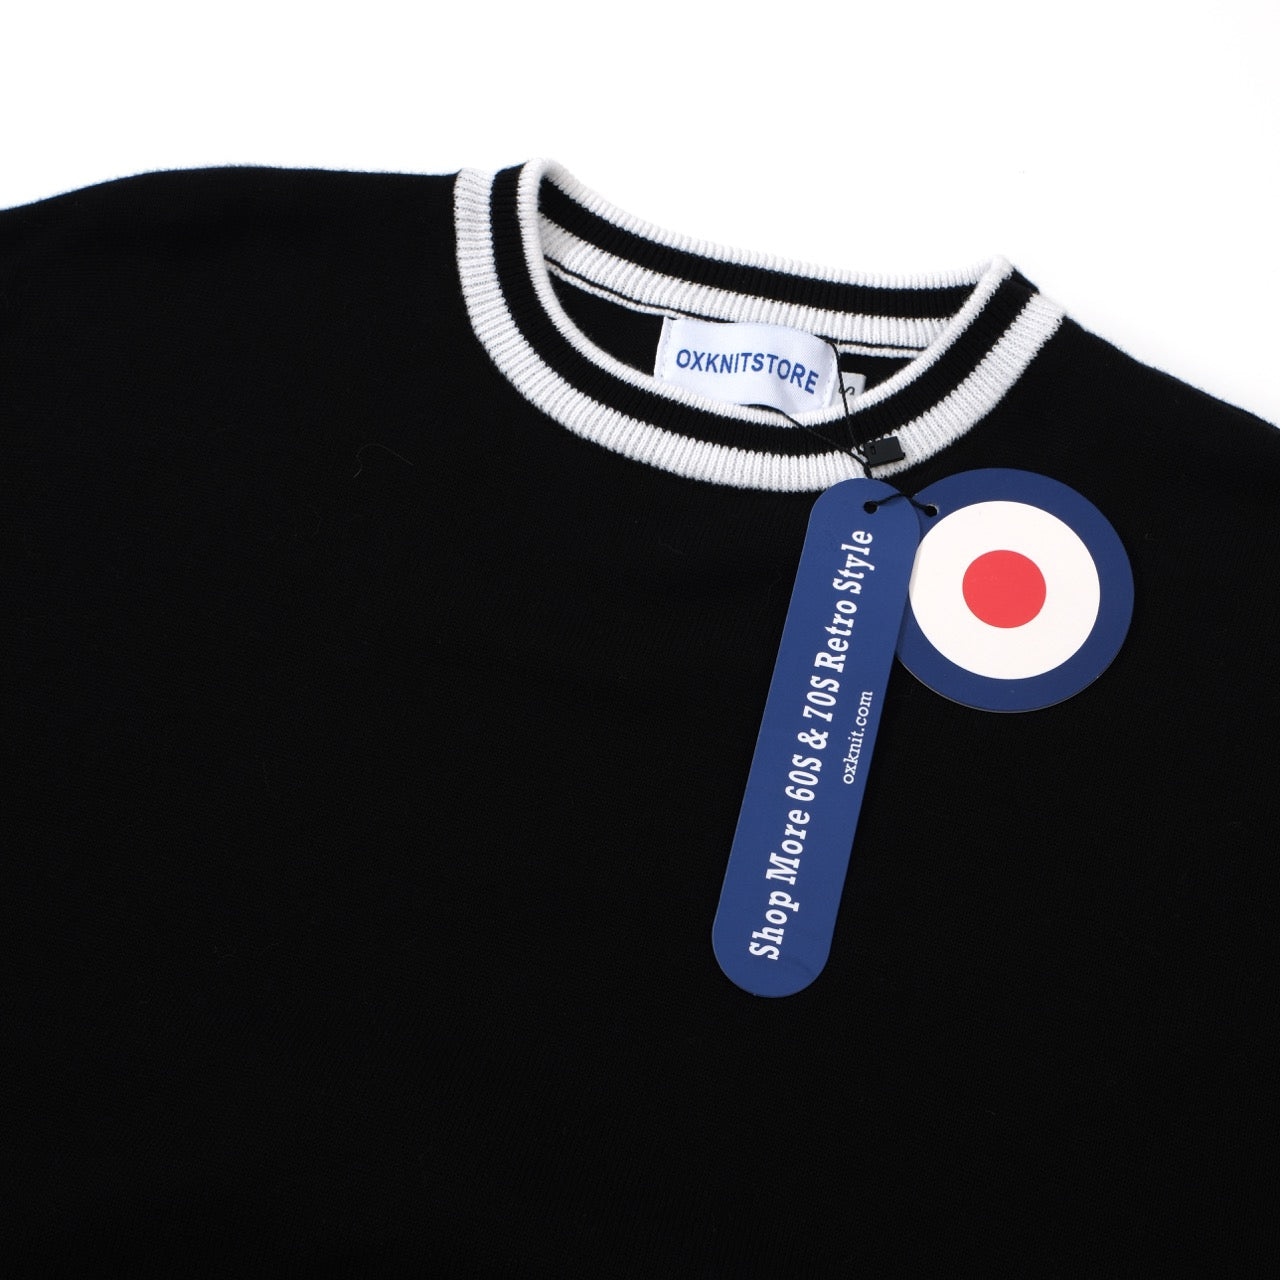 T-shirts noirs à manches longues en tricot de style mod rétro des années 1960 pour hommes